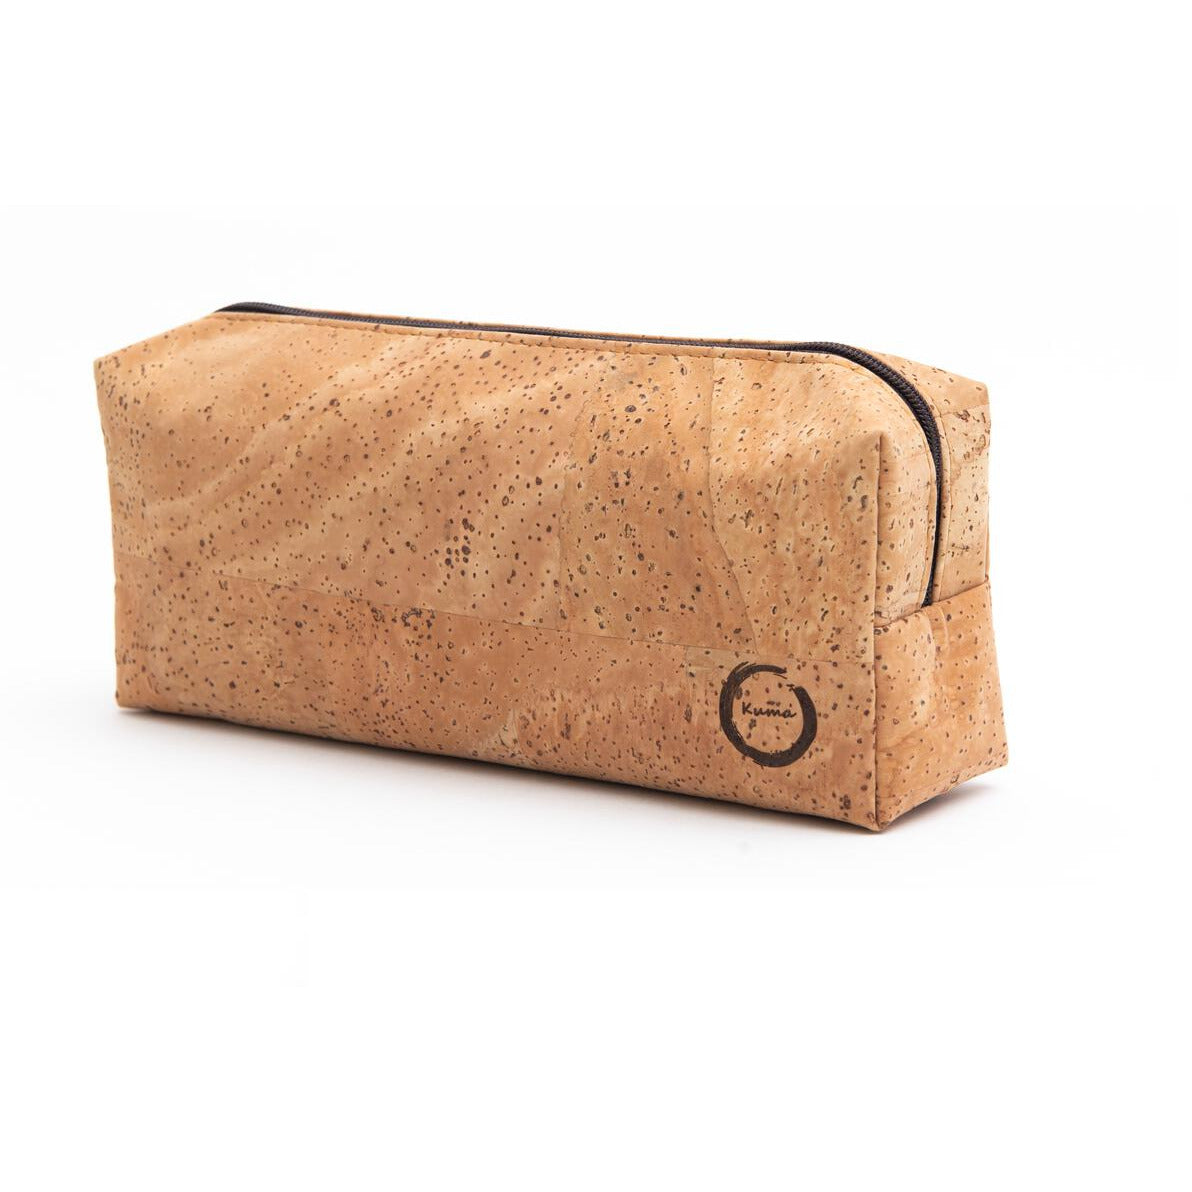 Natural Cork Cosmetic Bag